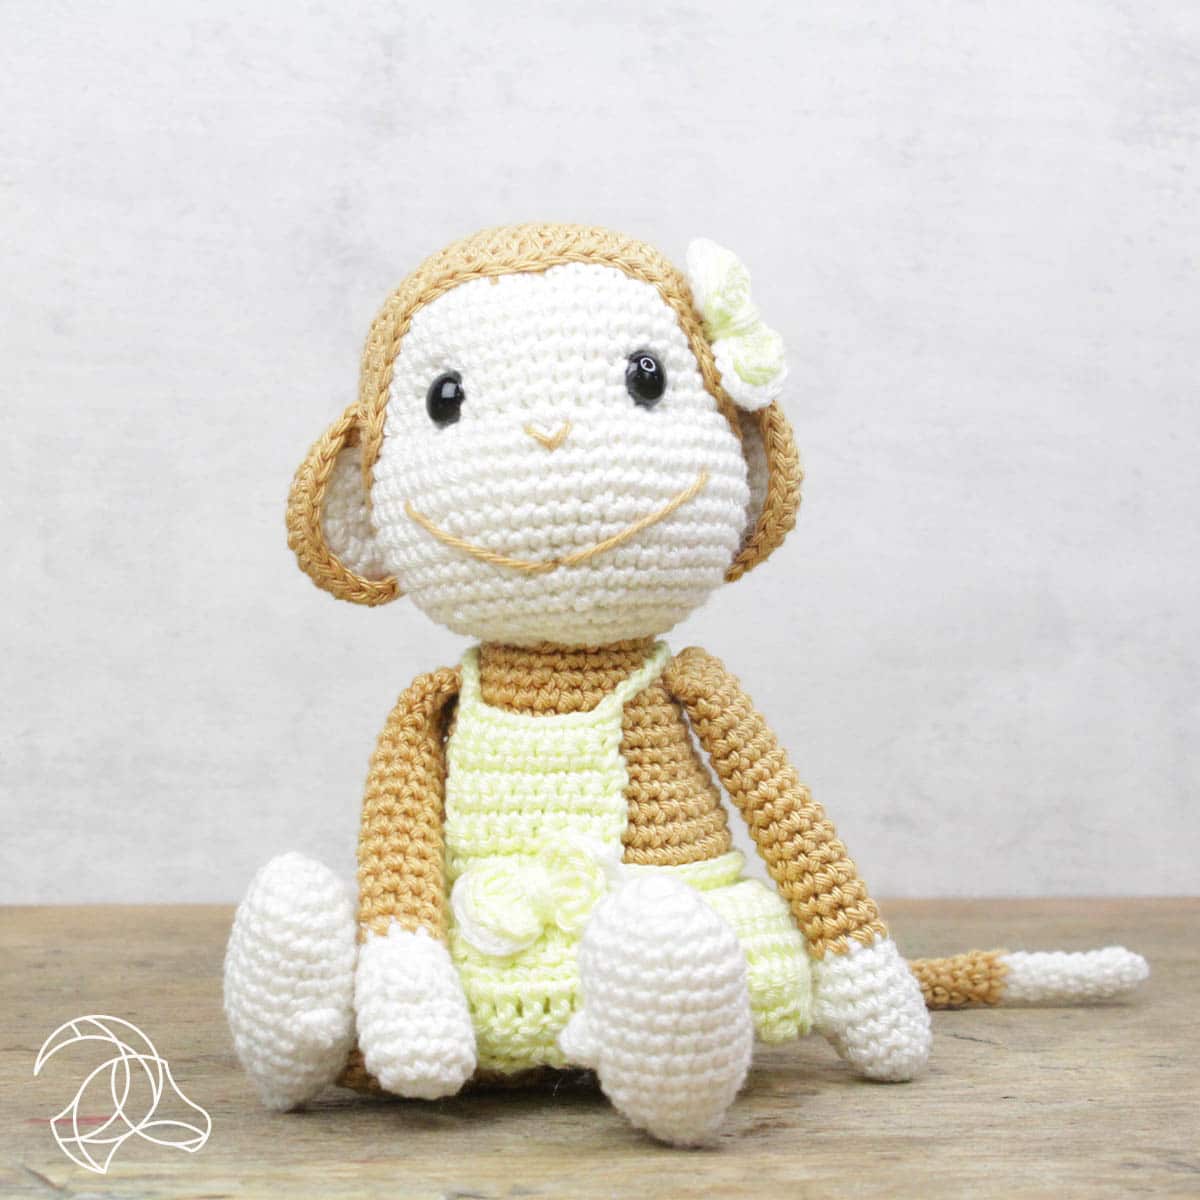 Nikki the Monkey Crochet Kit - by Hardicraft